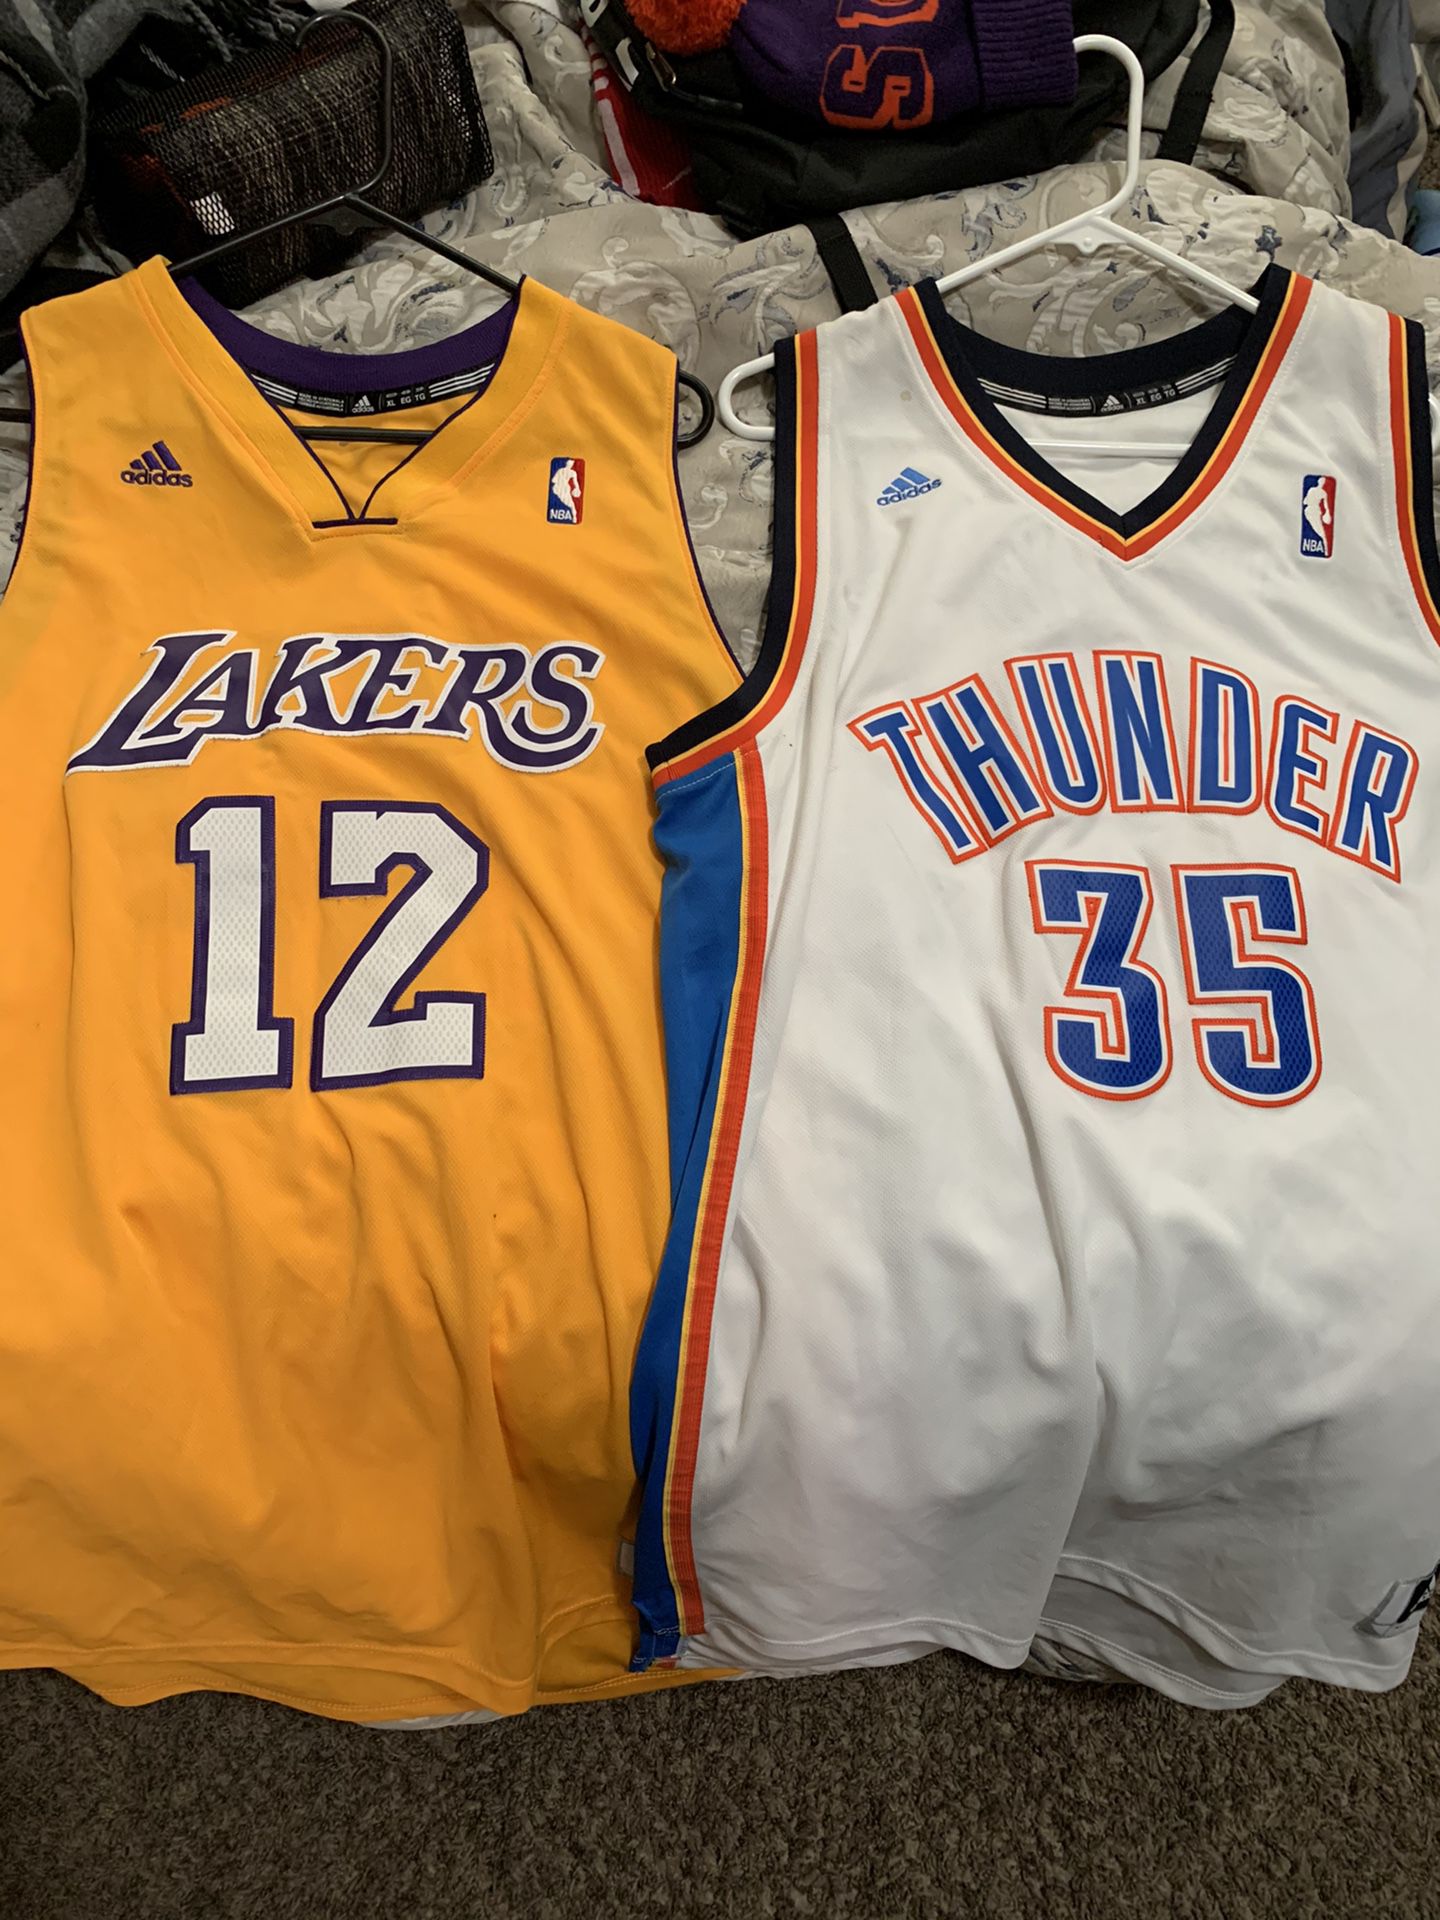 Lakers and Oklahoma thunder jerseys